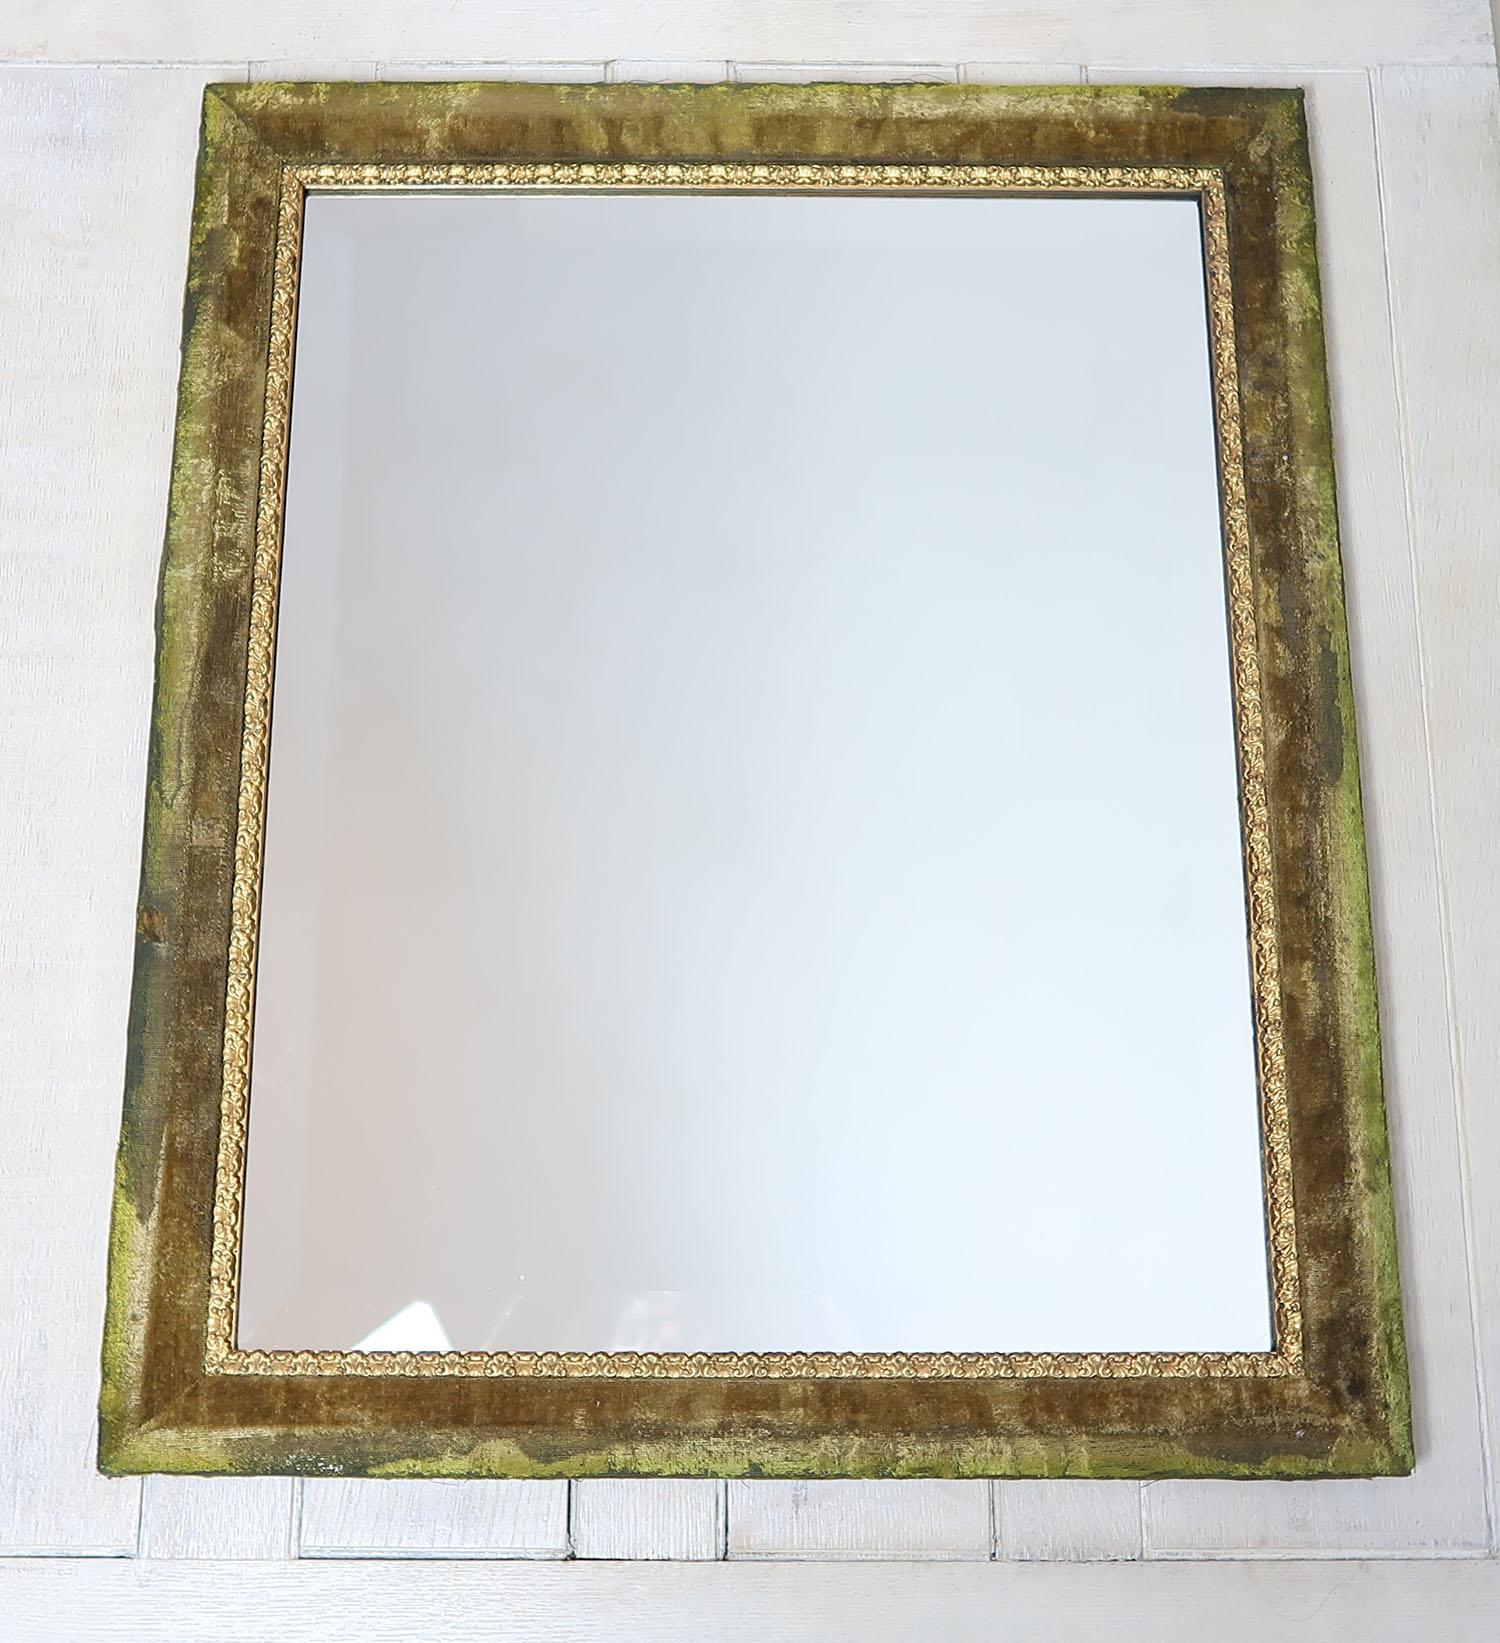 Spiegel in einer schönen Farbe von antikem grünem Samt auf einem Kiefernrahmen gerahmt

Im Renaissance-Revival-Stil 

Samt ist leicht beansprucht. 

Originalvergoldung. Nicht neu gestrichen.

Der Rahmen ist antik. Die abgeschrägte Spiegelplatte ist